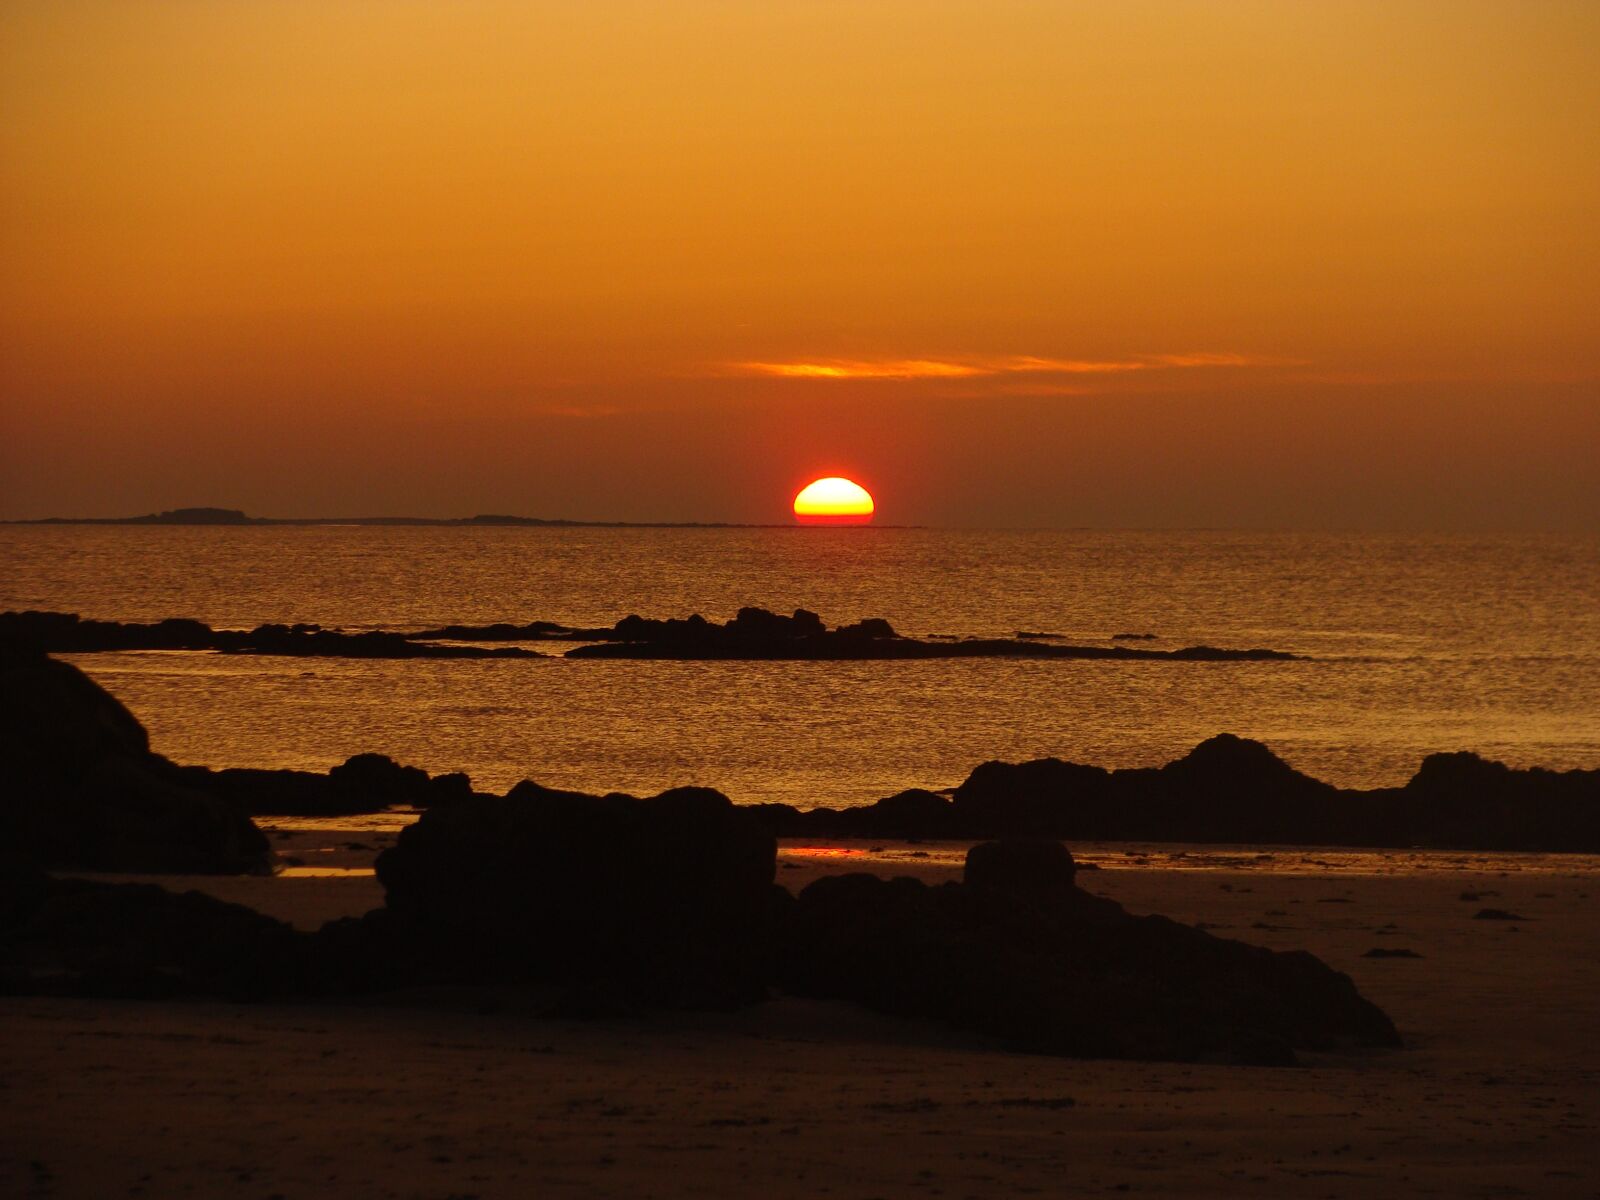 Sony Cyber-shot DSC-H10 sample photo. Sun dipping, sea, rocks photography